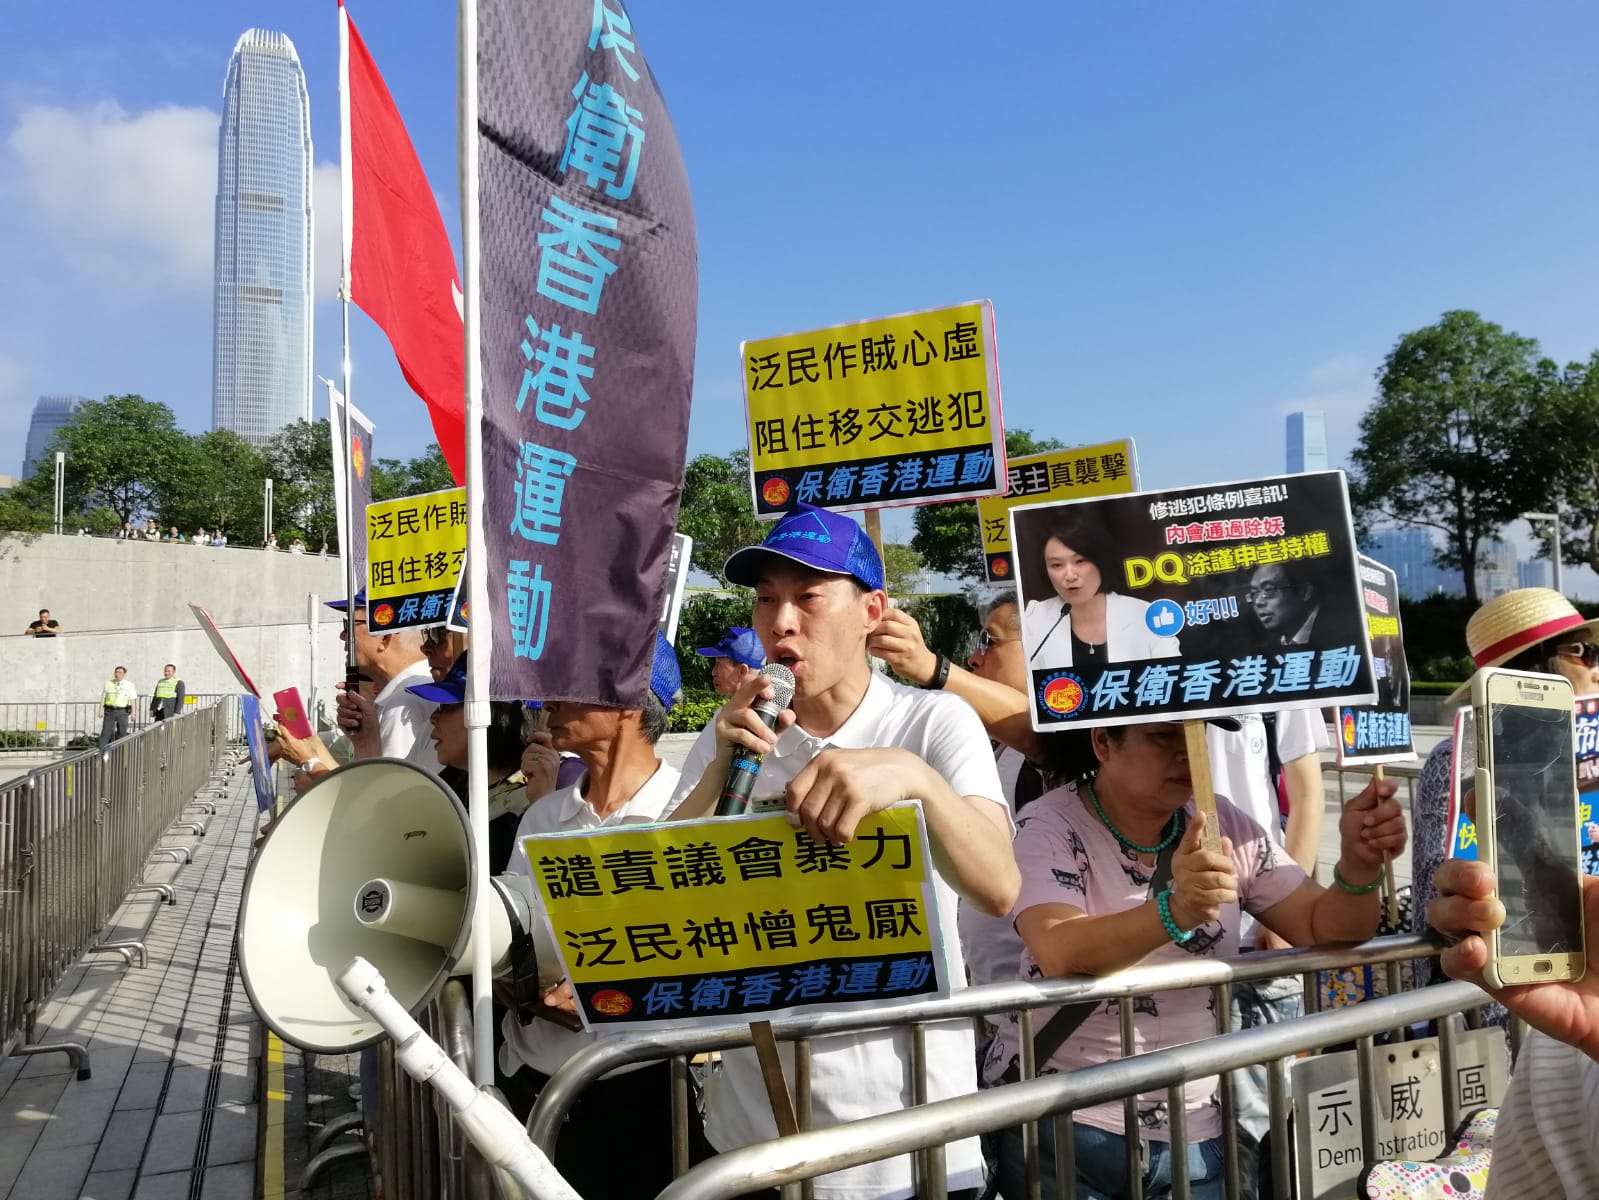 保衛香港運動 主辦「支持修逃犯例、 譴責議會暴力」集會